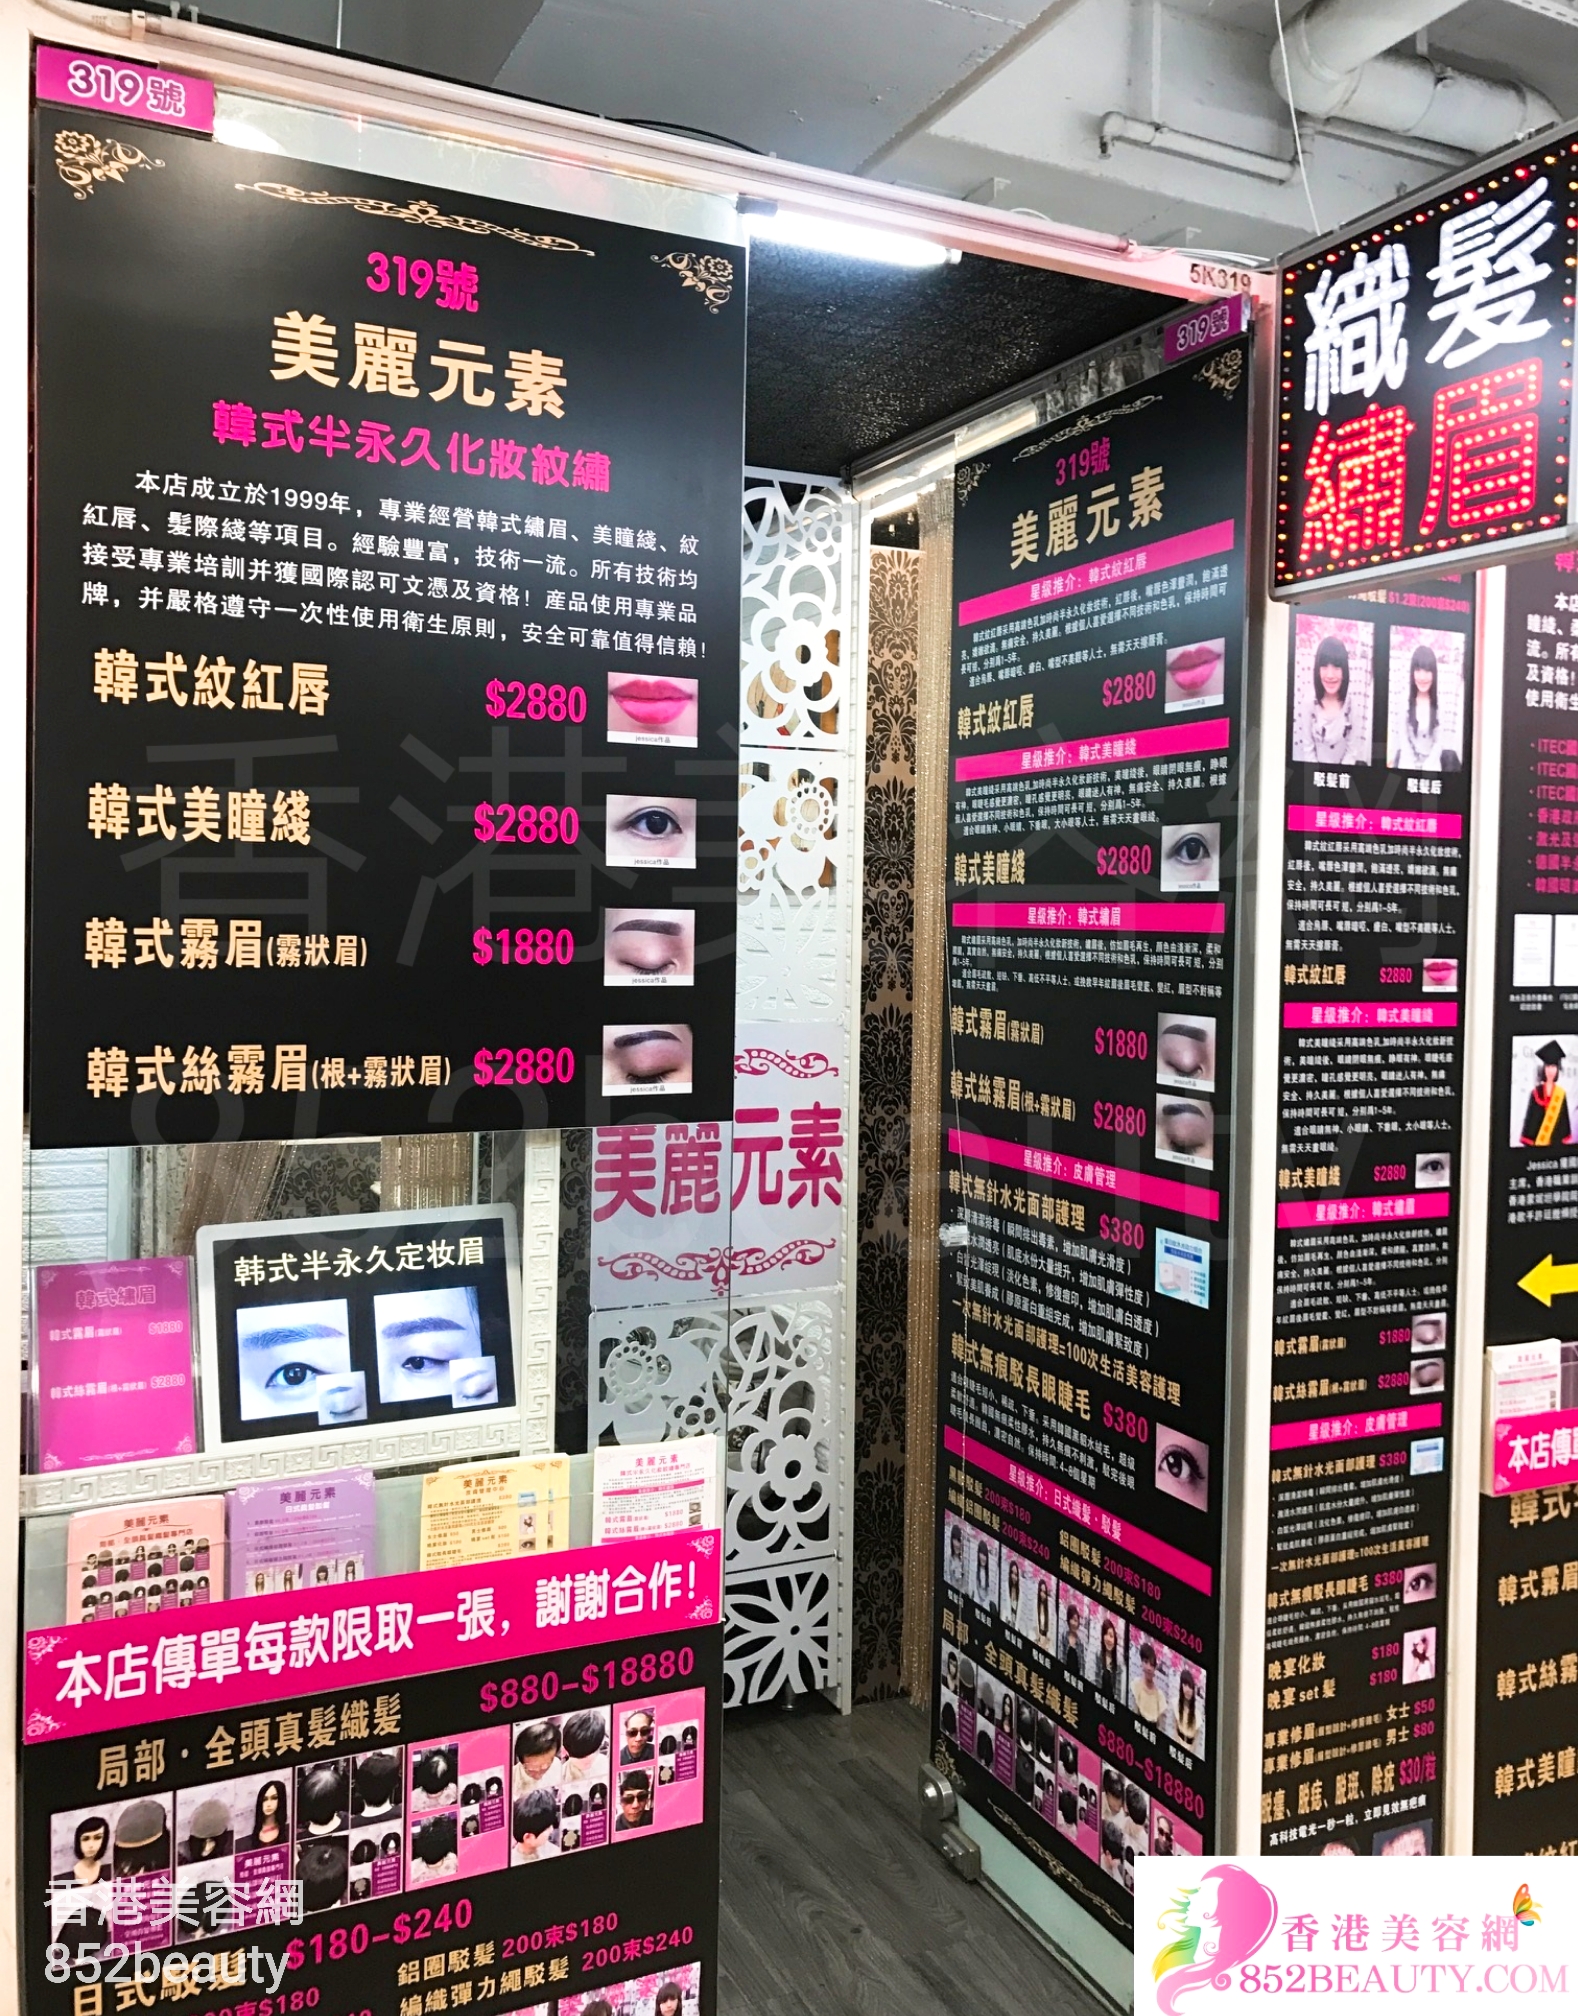 香港美容網 Hong Kong Beauty Salon 美容院 / 美容師: 美麗元素